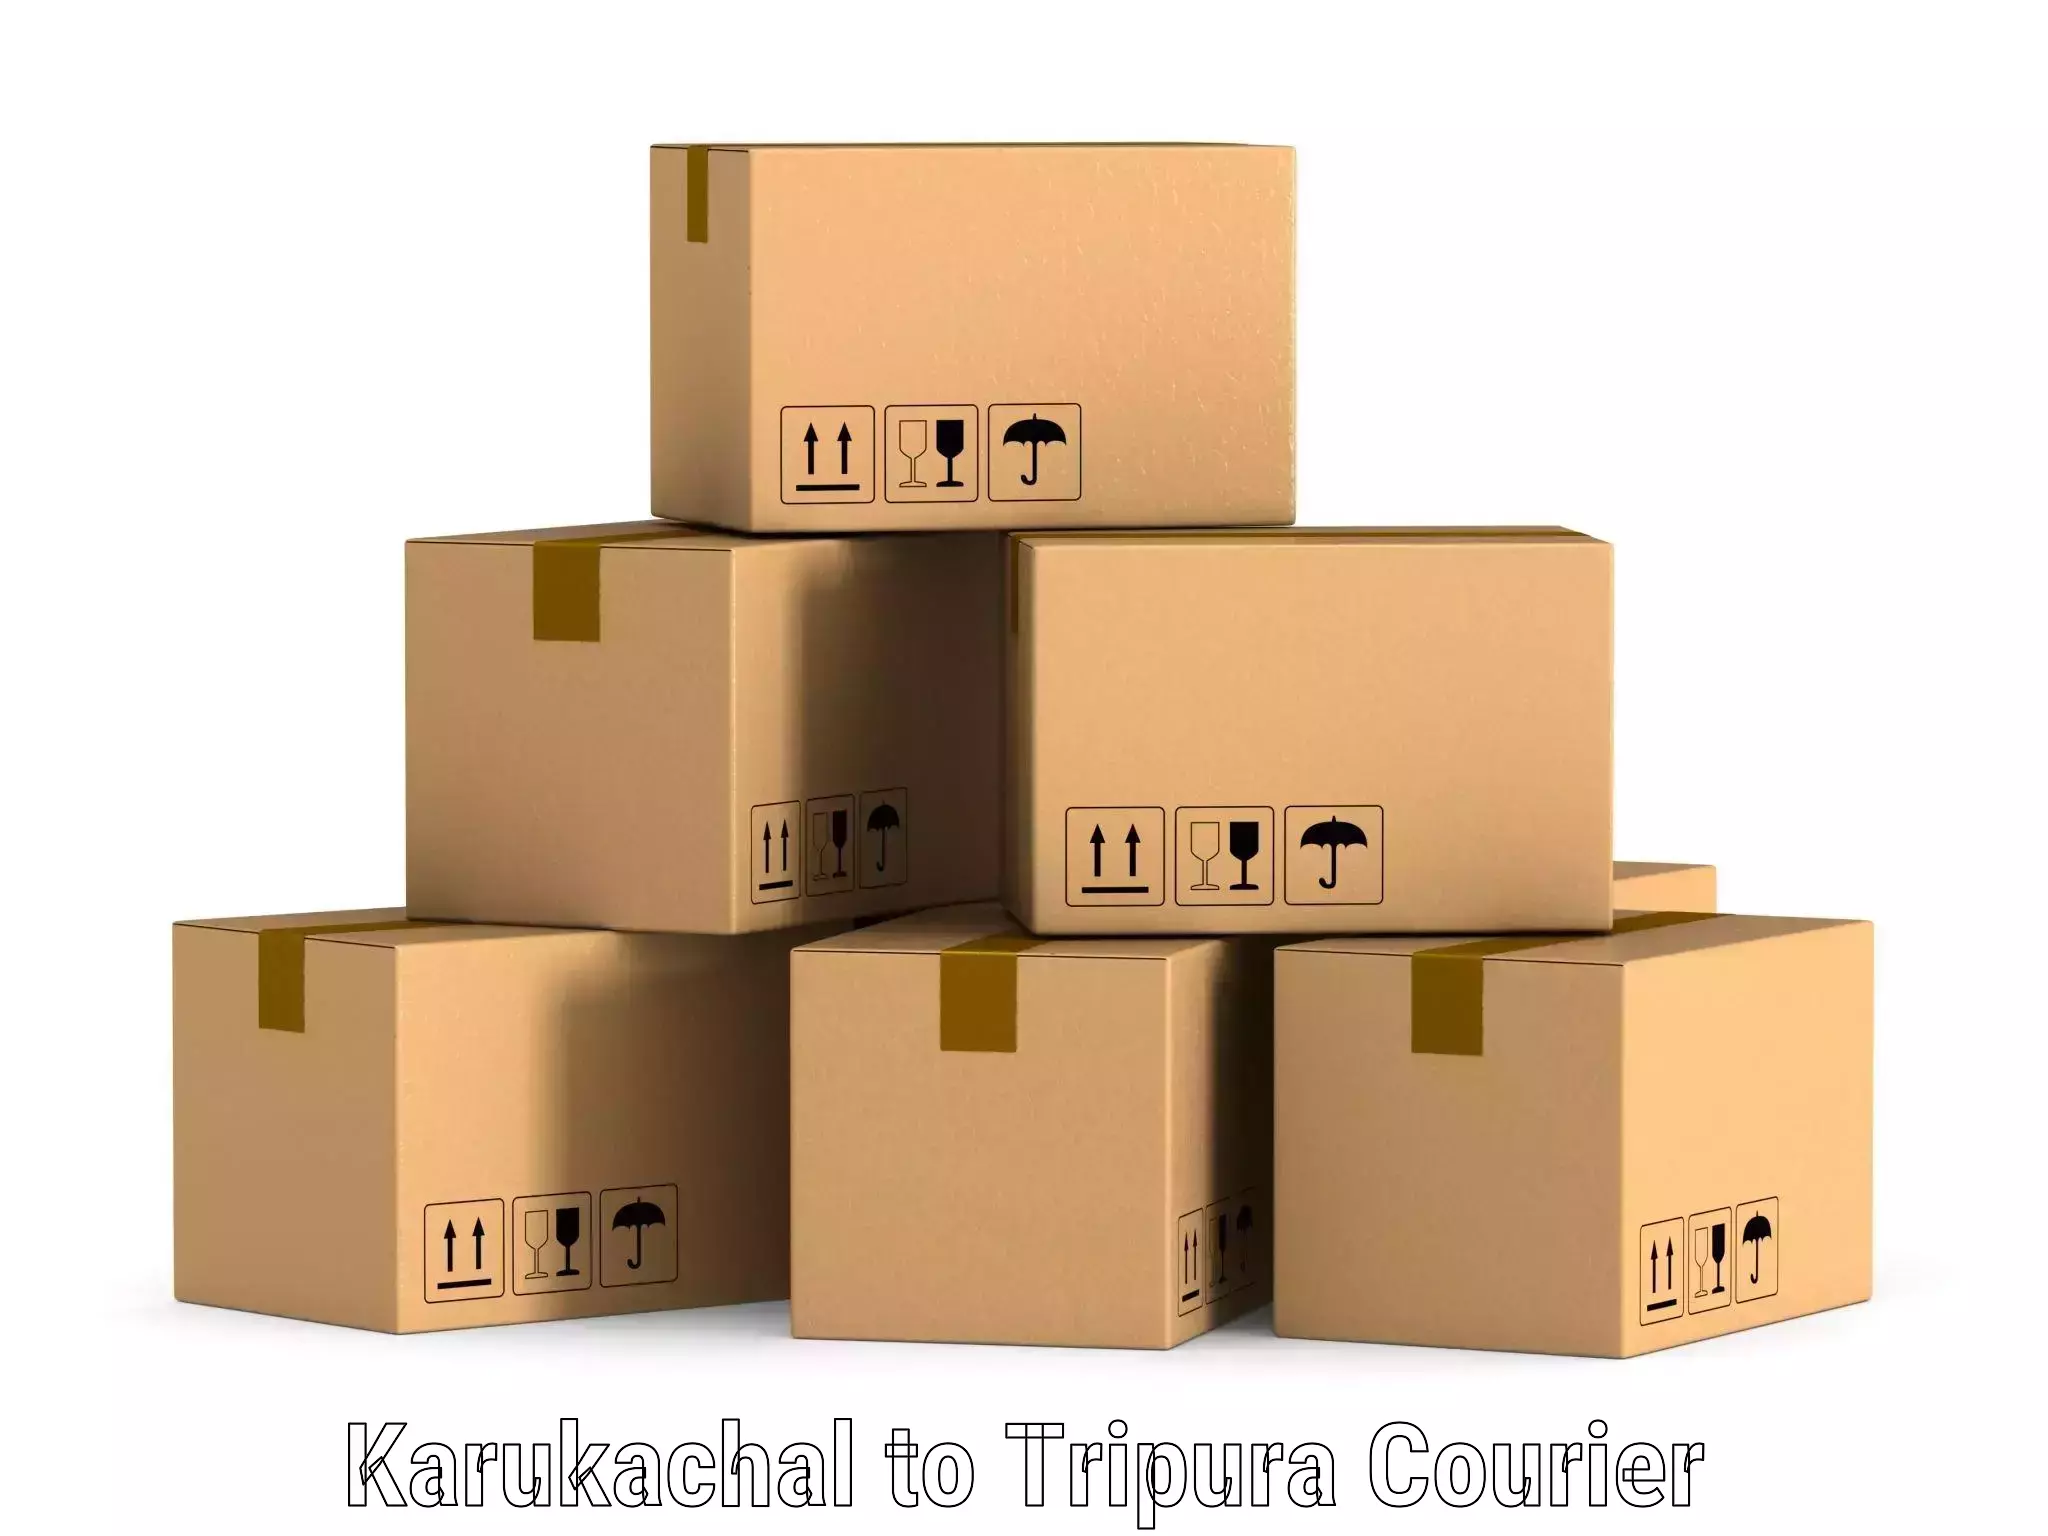 Next-generation courier services Karukachal to Amarpur Gomati